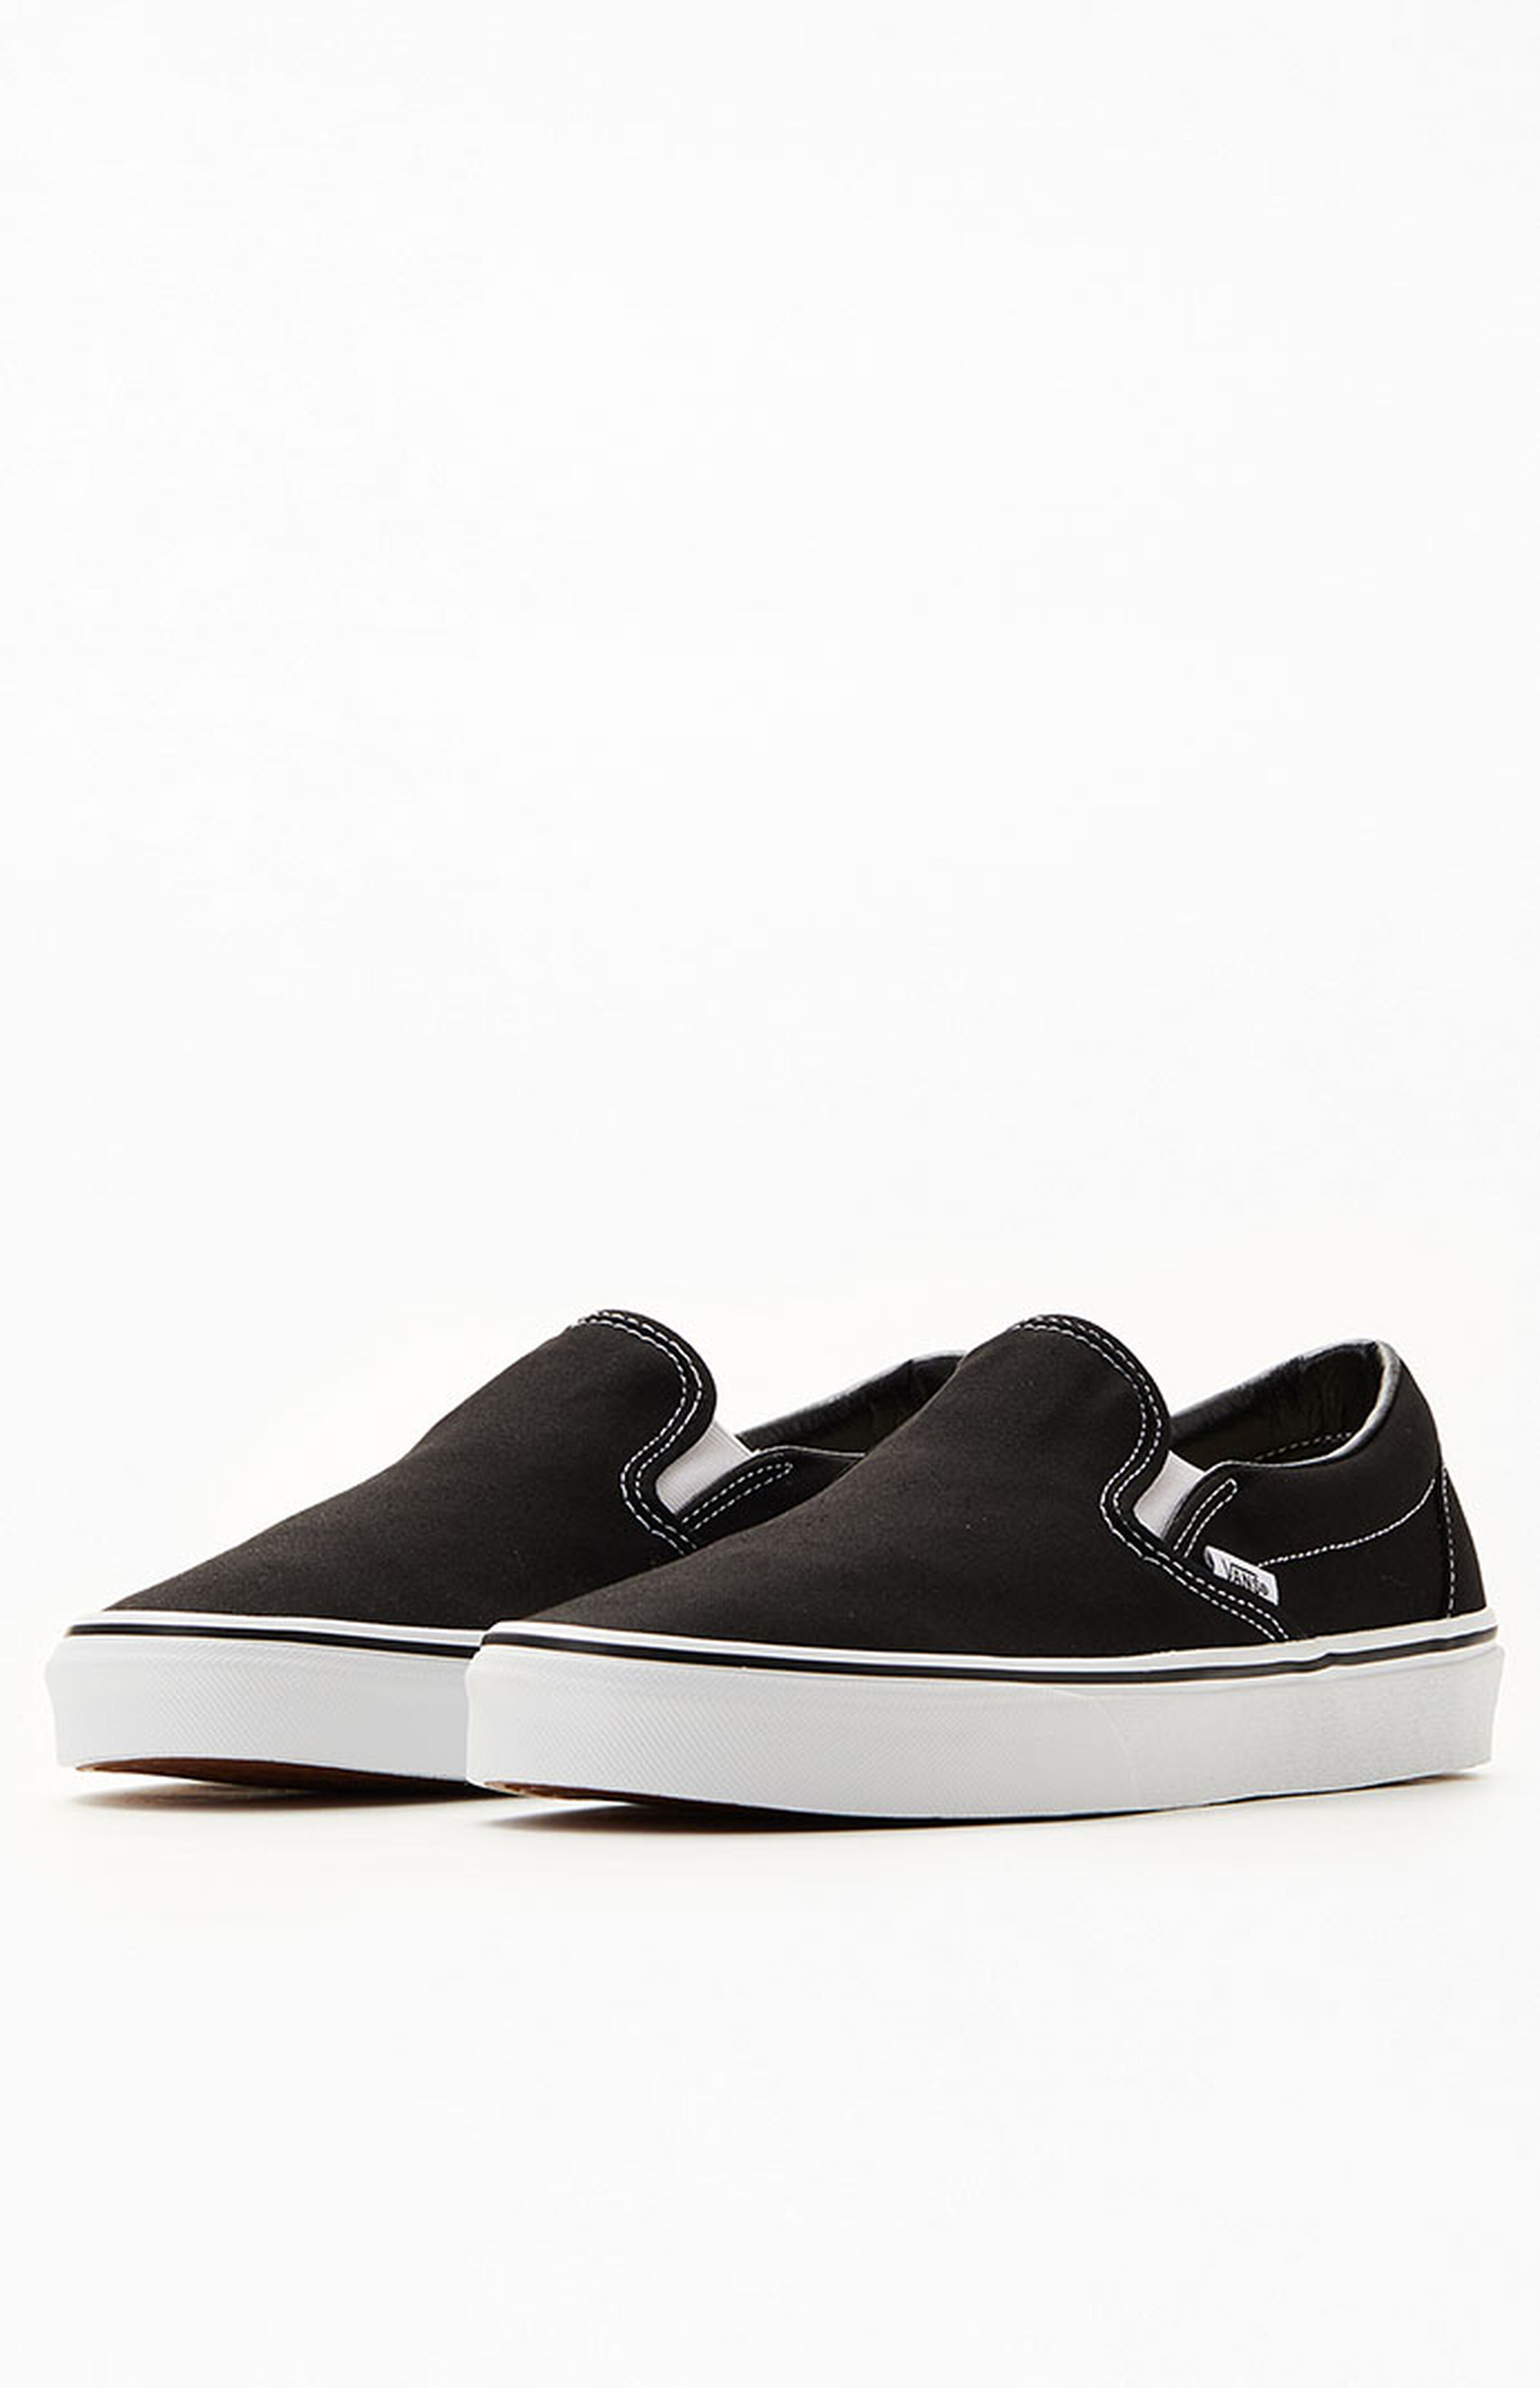 Vans Classic Slip-On Black Shoes | PacSun